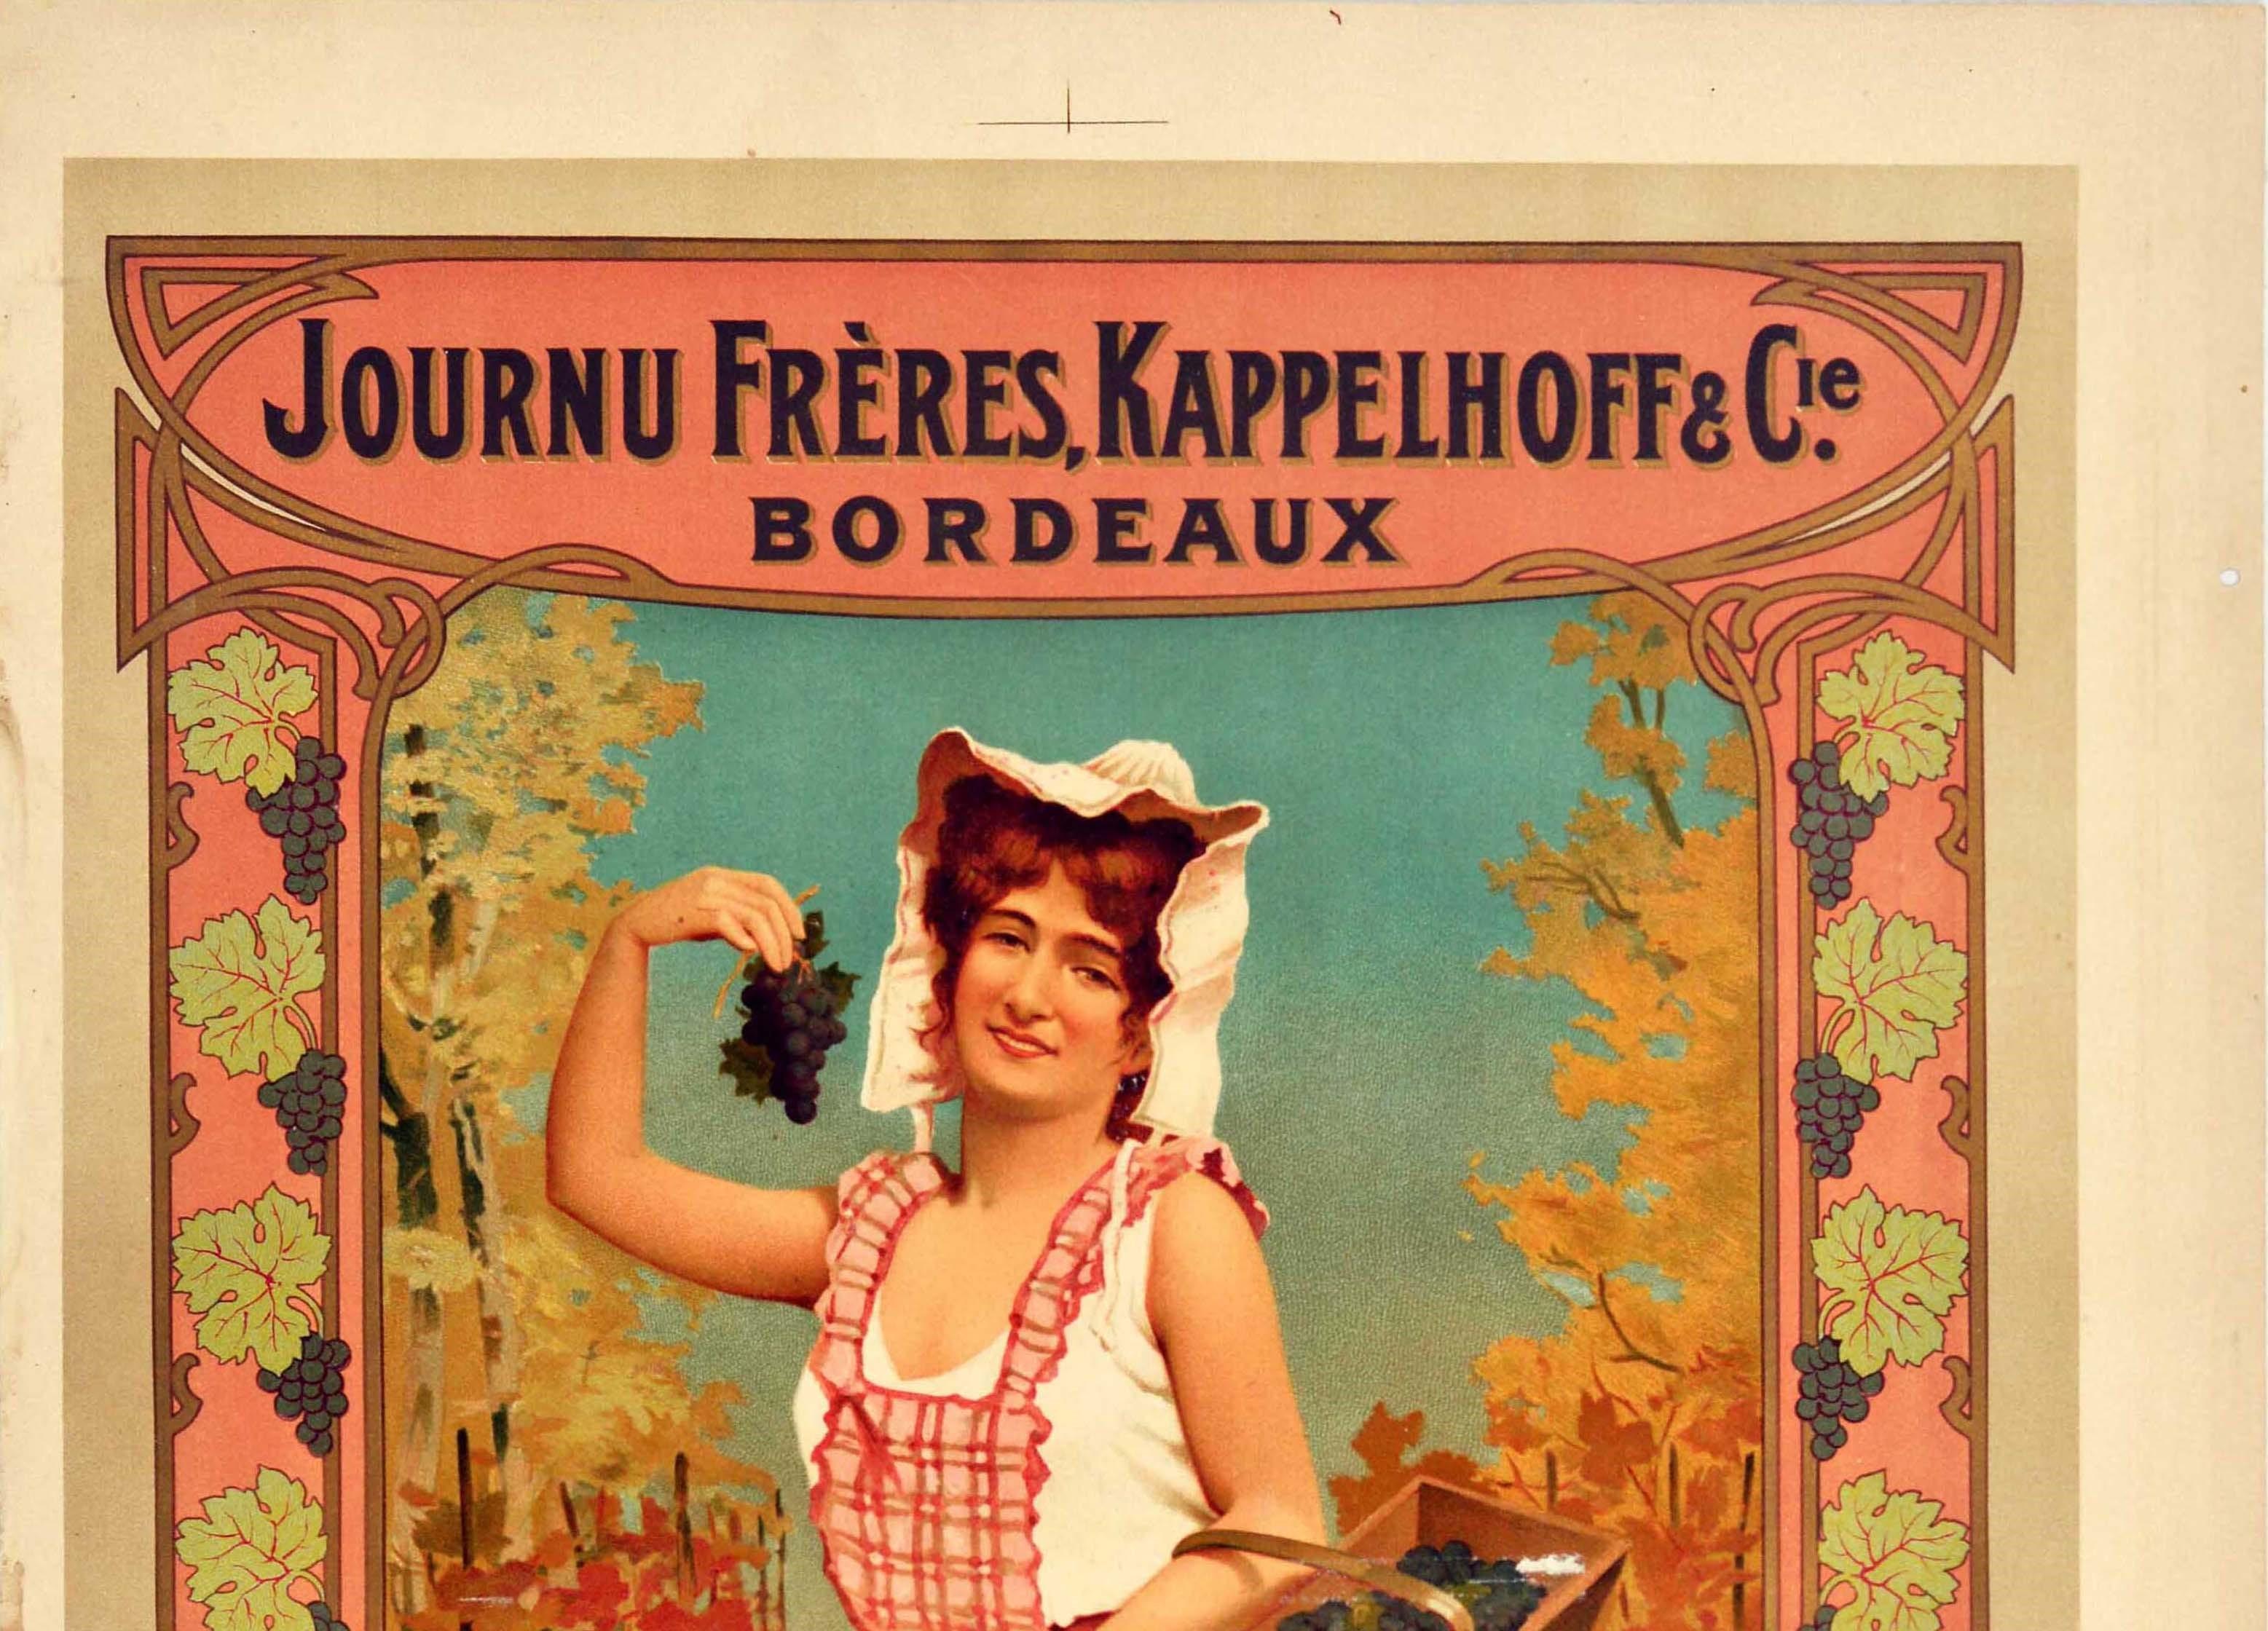 Affiche publicitaire originale et ancienne pour les boissons Journu Freres, Kappelhoff & Cie. Vin de Bordeaux présentant une image colorée d'une vendangeuse souriante tenant un panier de raisins et une grappe dans sa main pour montrer au spectateur,